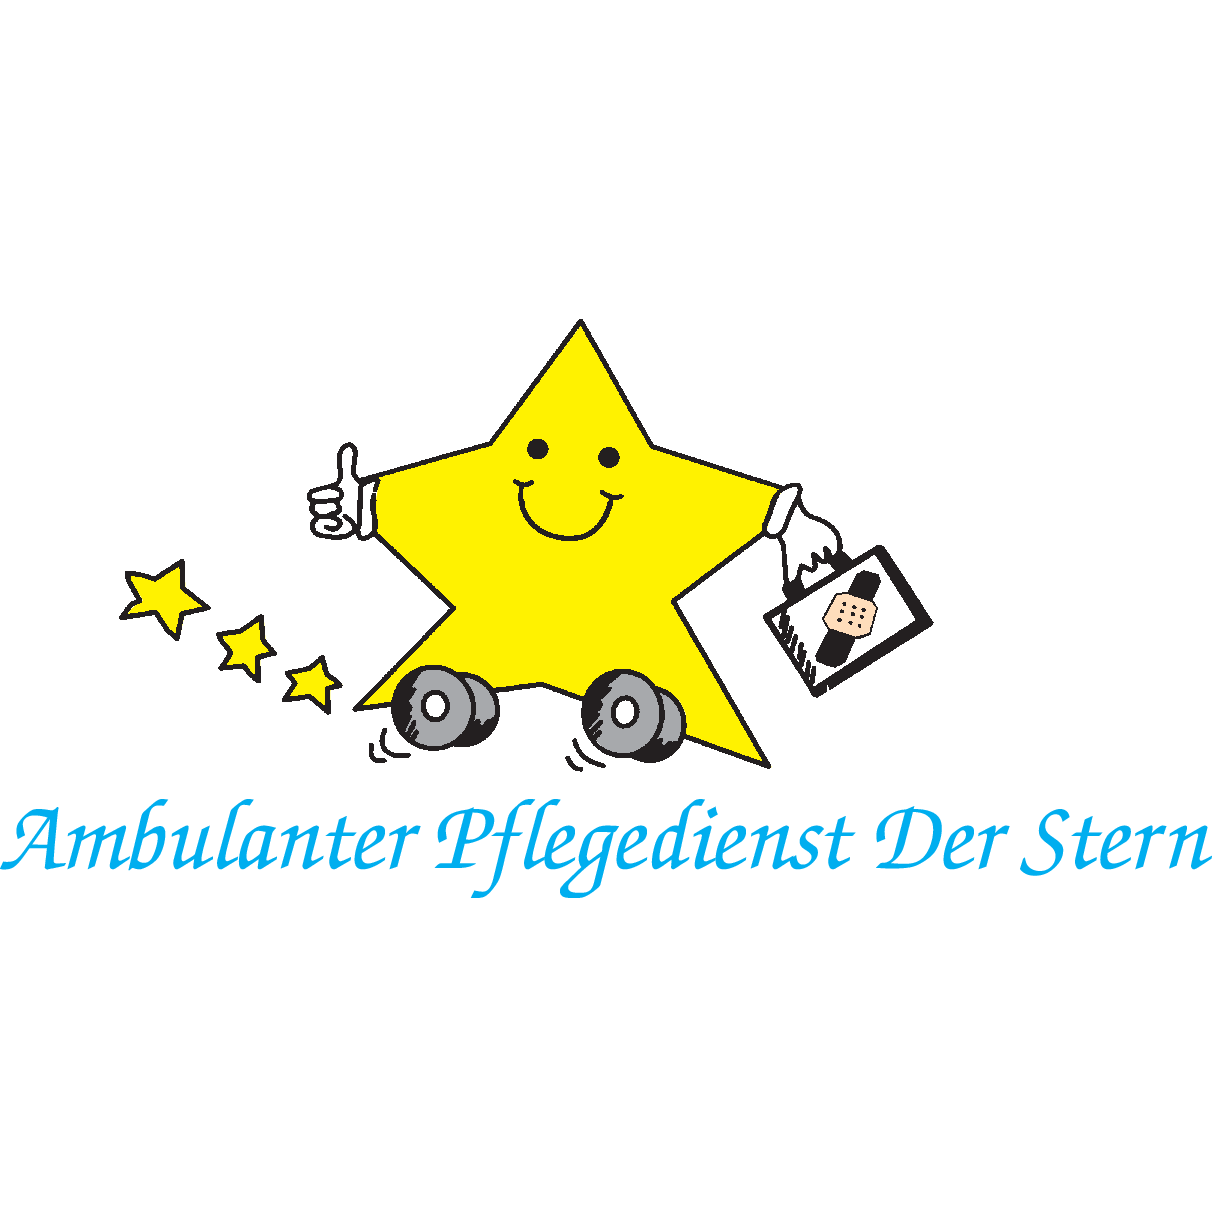 Ambulanter Pflegedienst Der Stern Logo